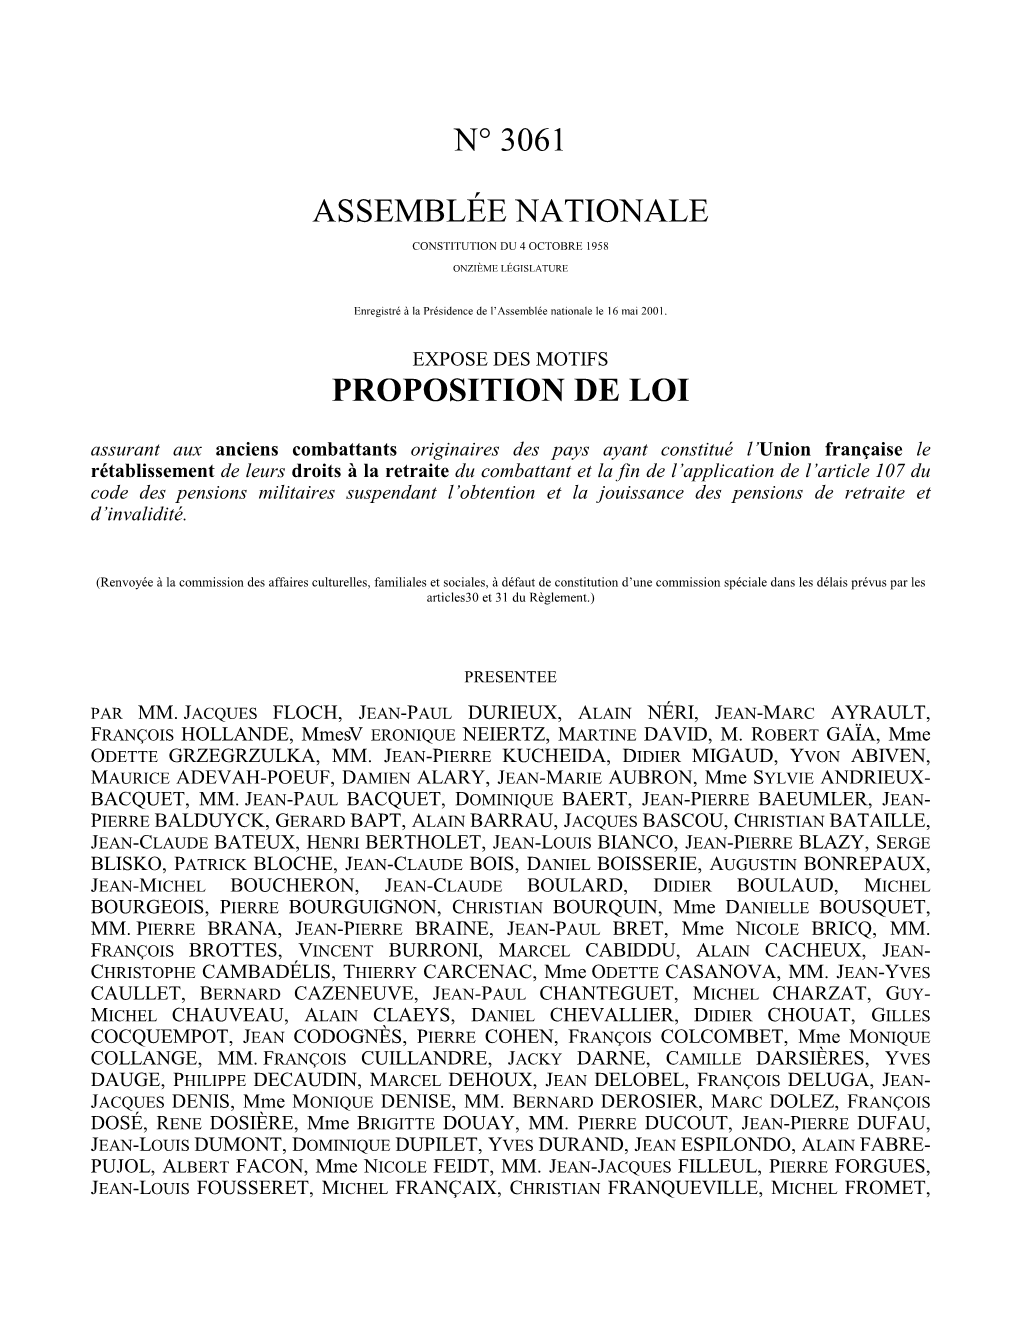 N° 3061 Assemblée Nationale Proposition De